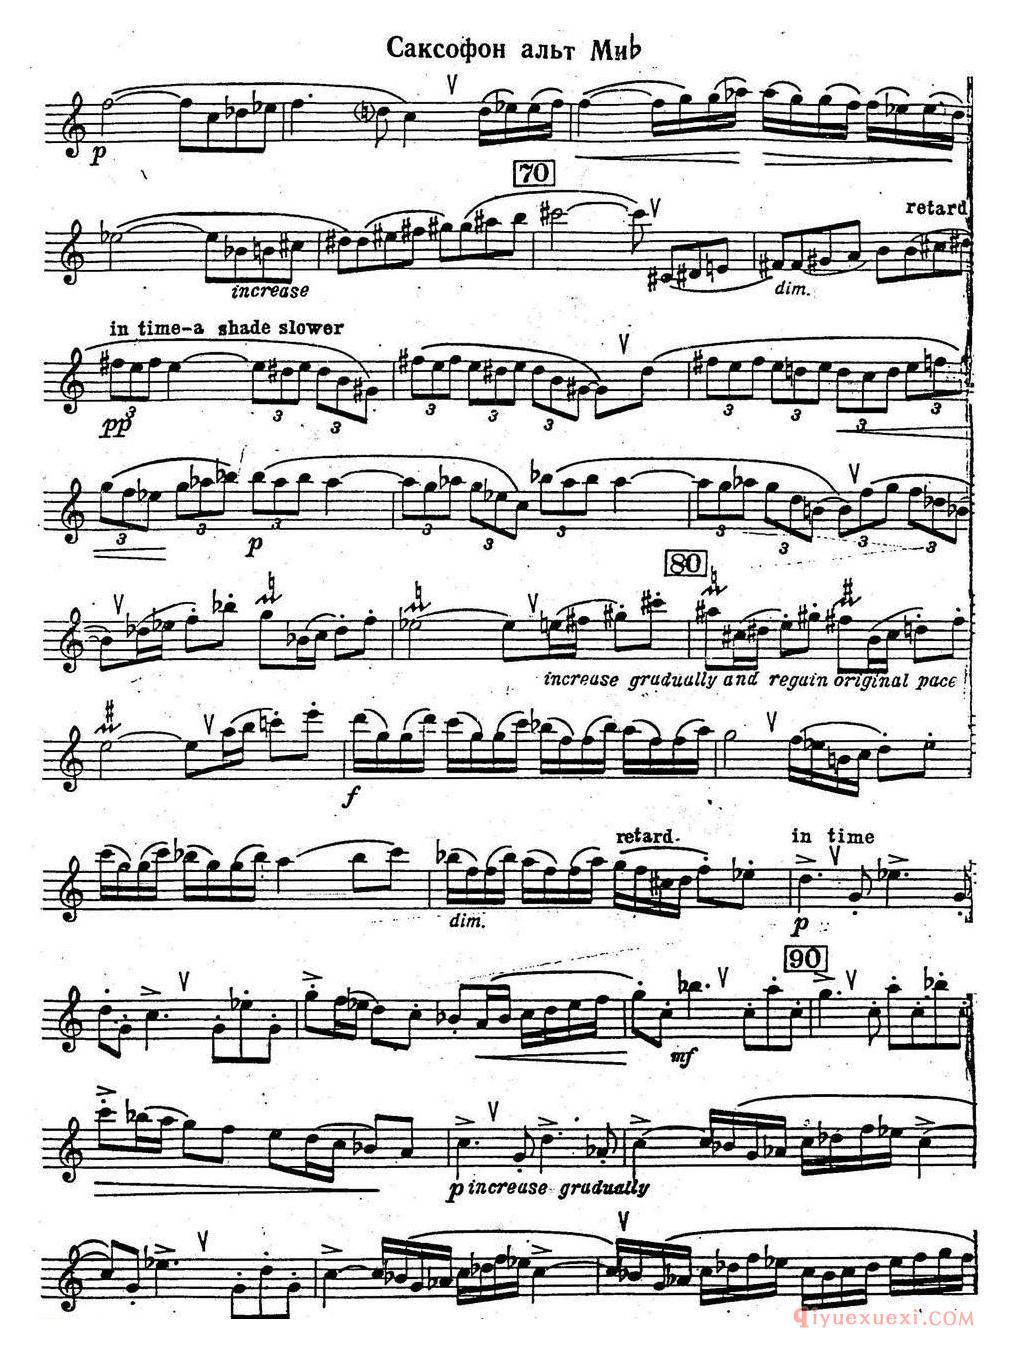 克莱斯顿《中音萨克斯管奏鸣曲》第一乐章